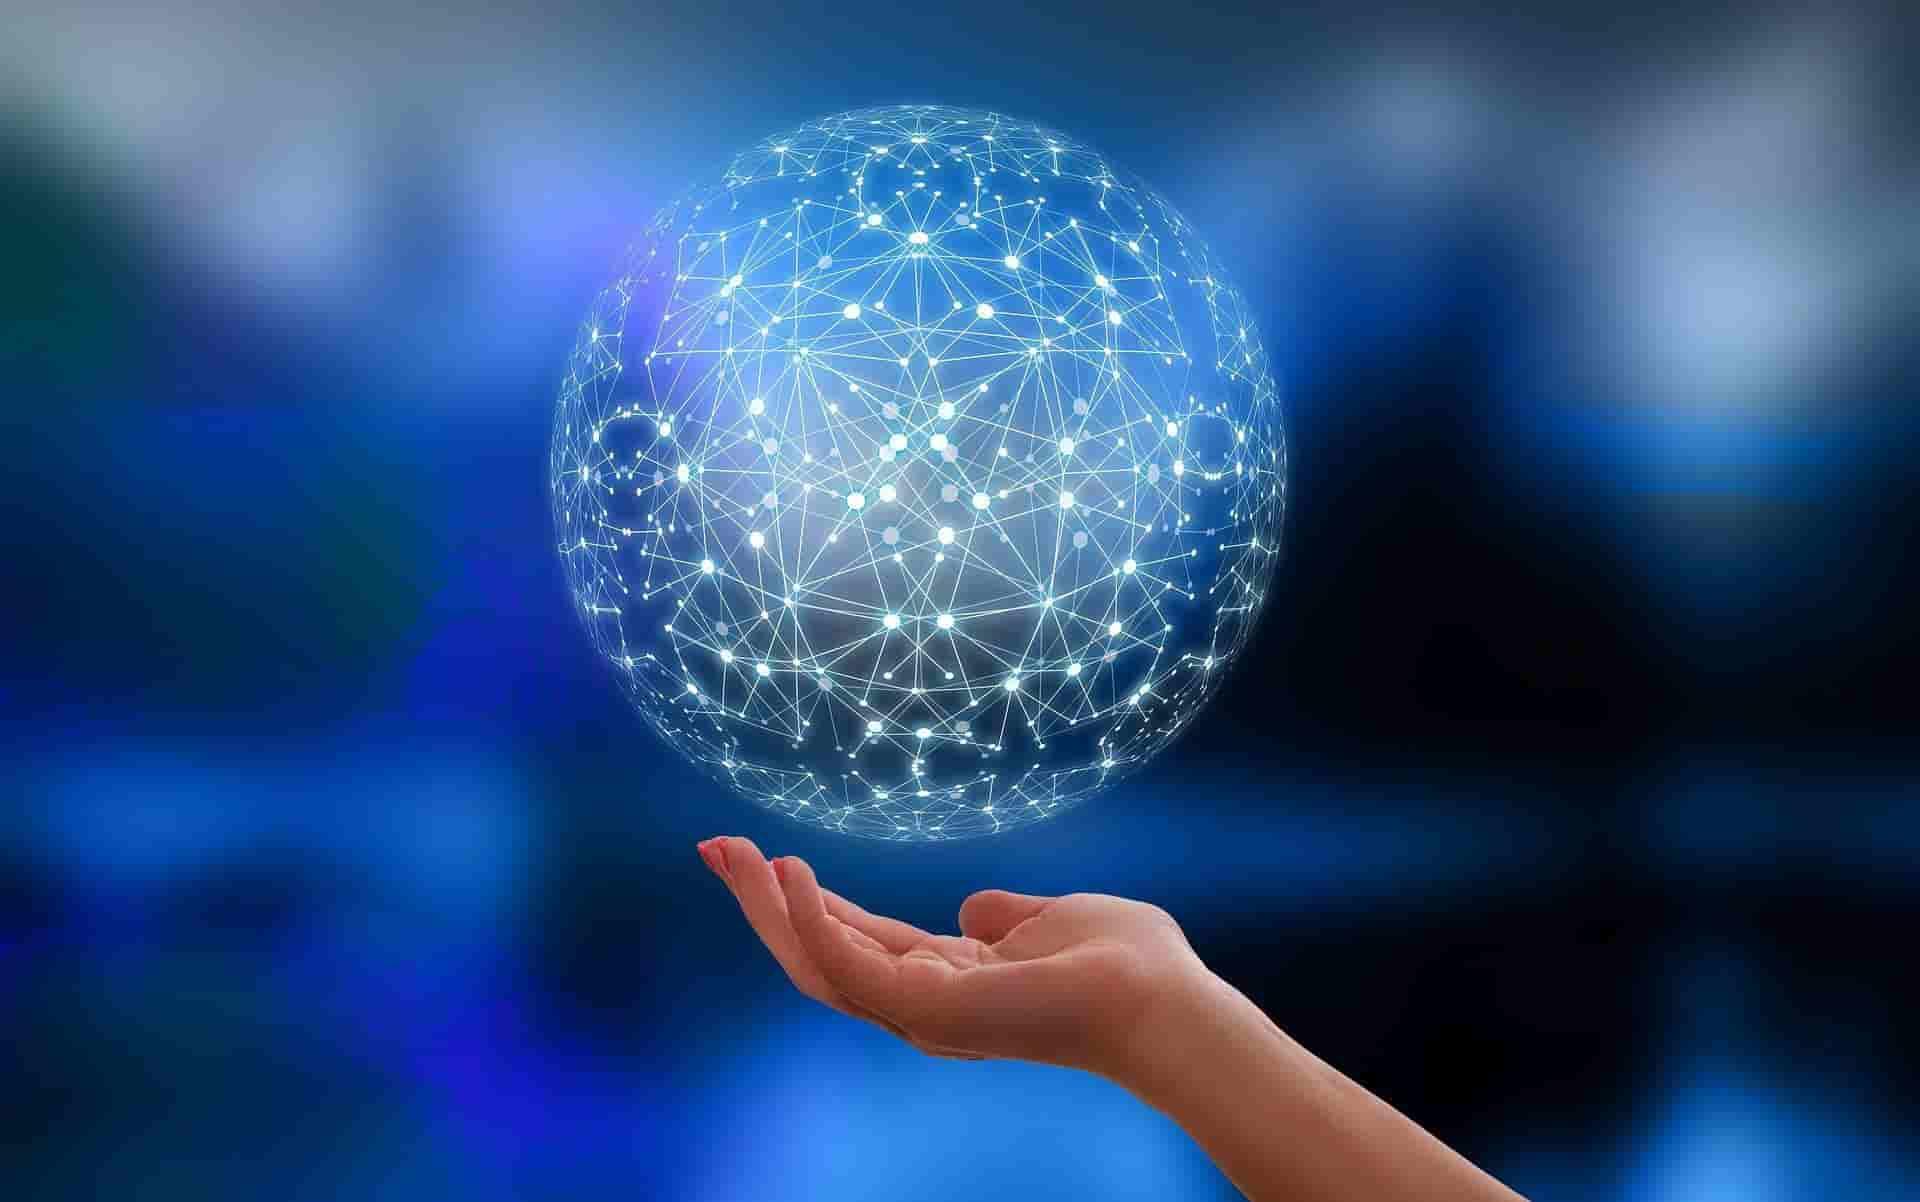 Imagem em animação com a palma de uma mão virada para cima, bem próxima de uma esfera vazada com inúmeros pontos brilhantes interligados, sugerindo conexões. O fundo é em azul degradê